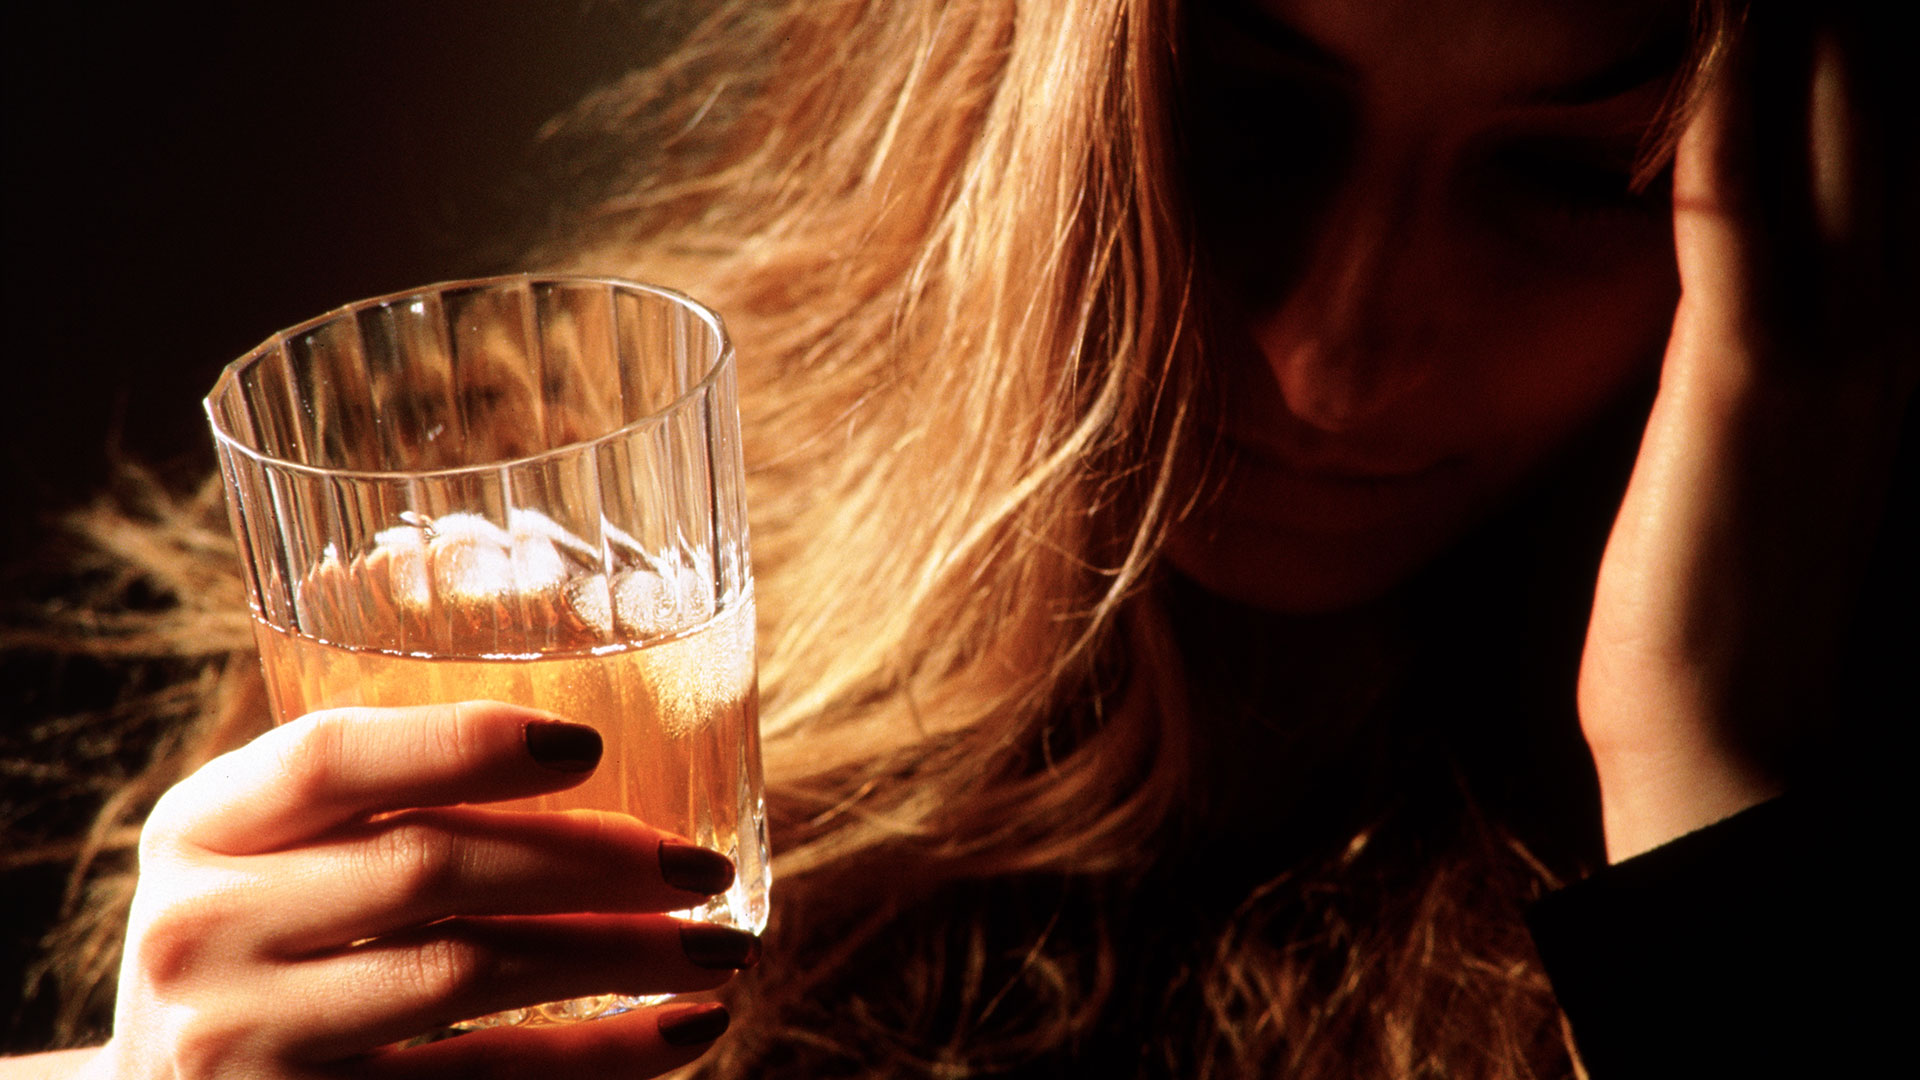 Las personas jóvenes, de entre 15 y 39 años, tienen mayores riesgos para su salud si beben alcohol que los mayores de 40 que no presenten condiciones de salud subyacentes, quienes podrían tener algunos beneficios en un consumo moderado (Getty Images)